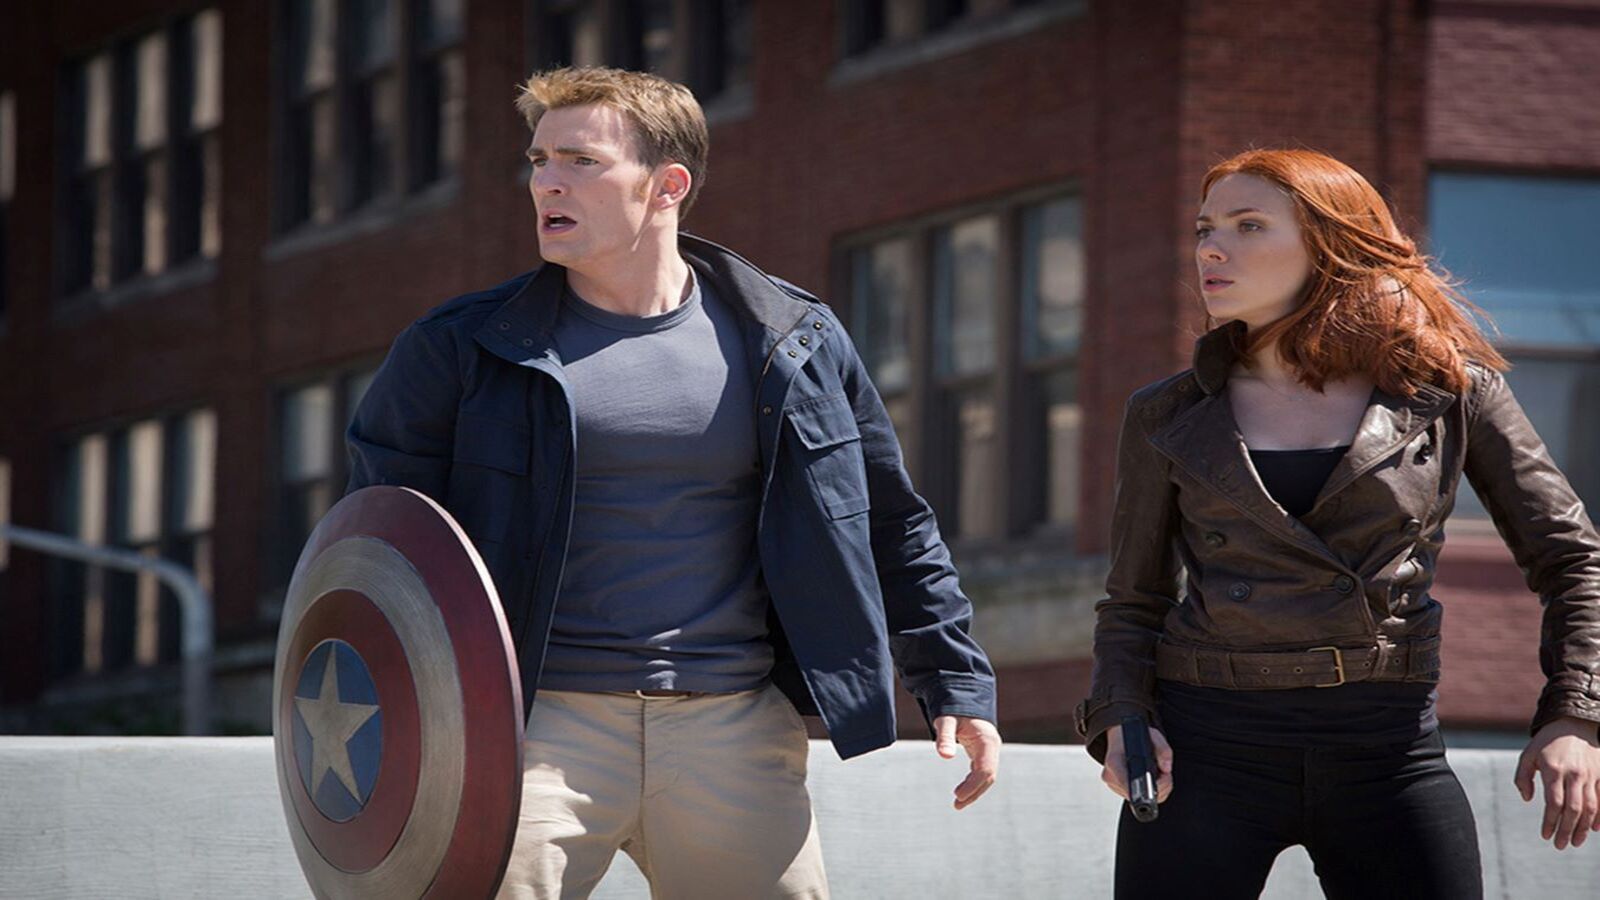 Captain America: The Winter Soldier: trama e cast del film con Chris Evans, stasera 13 aprile su Italia 1